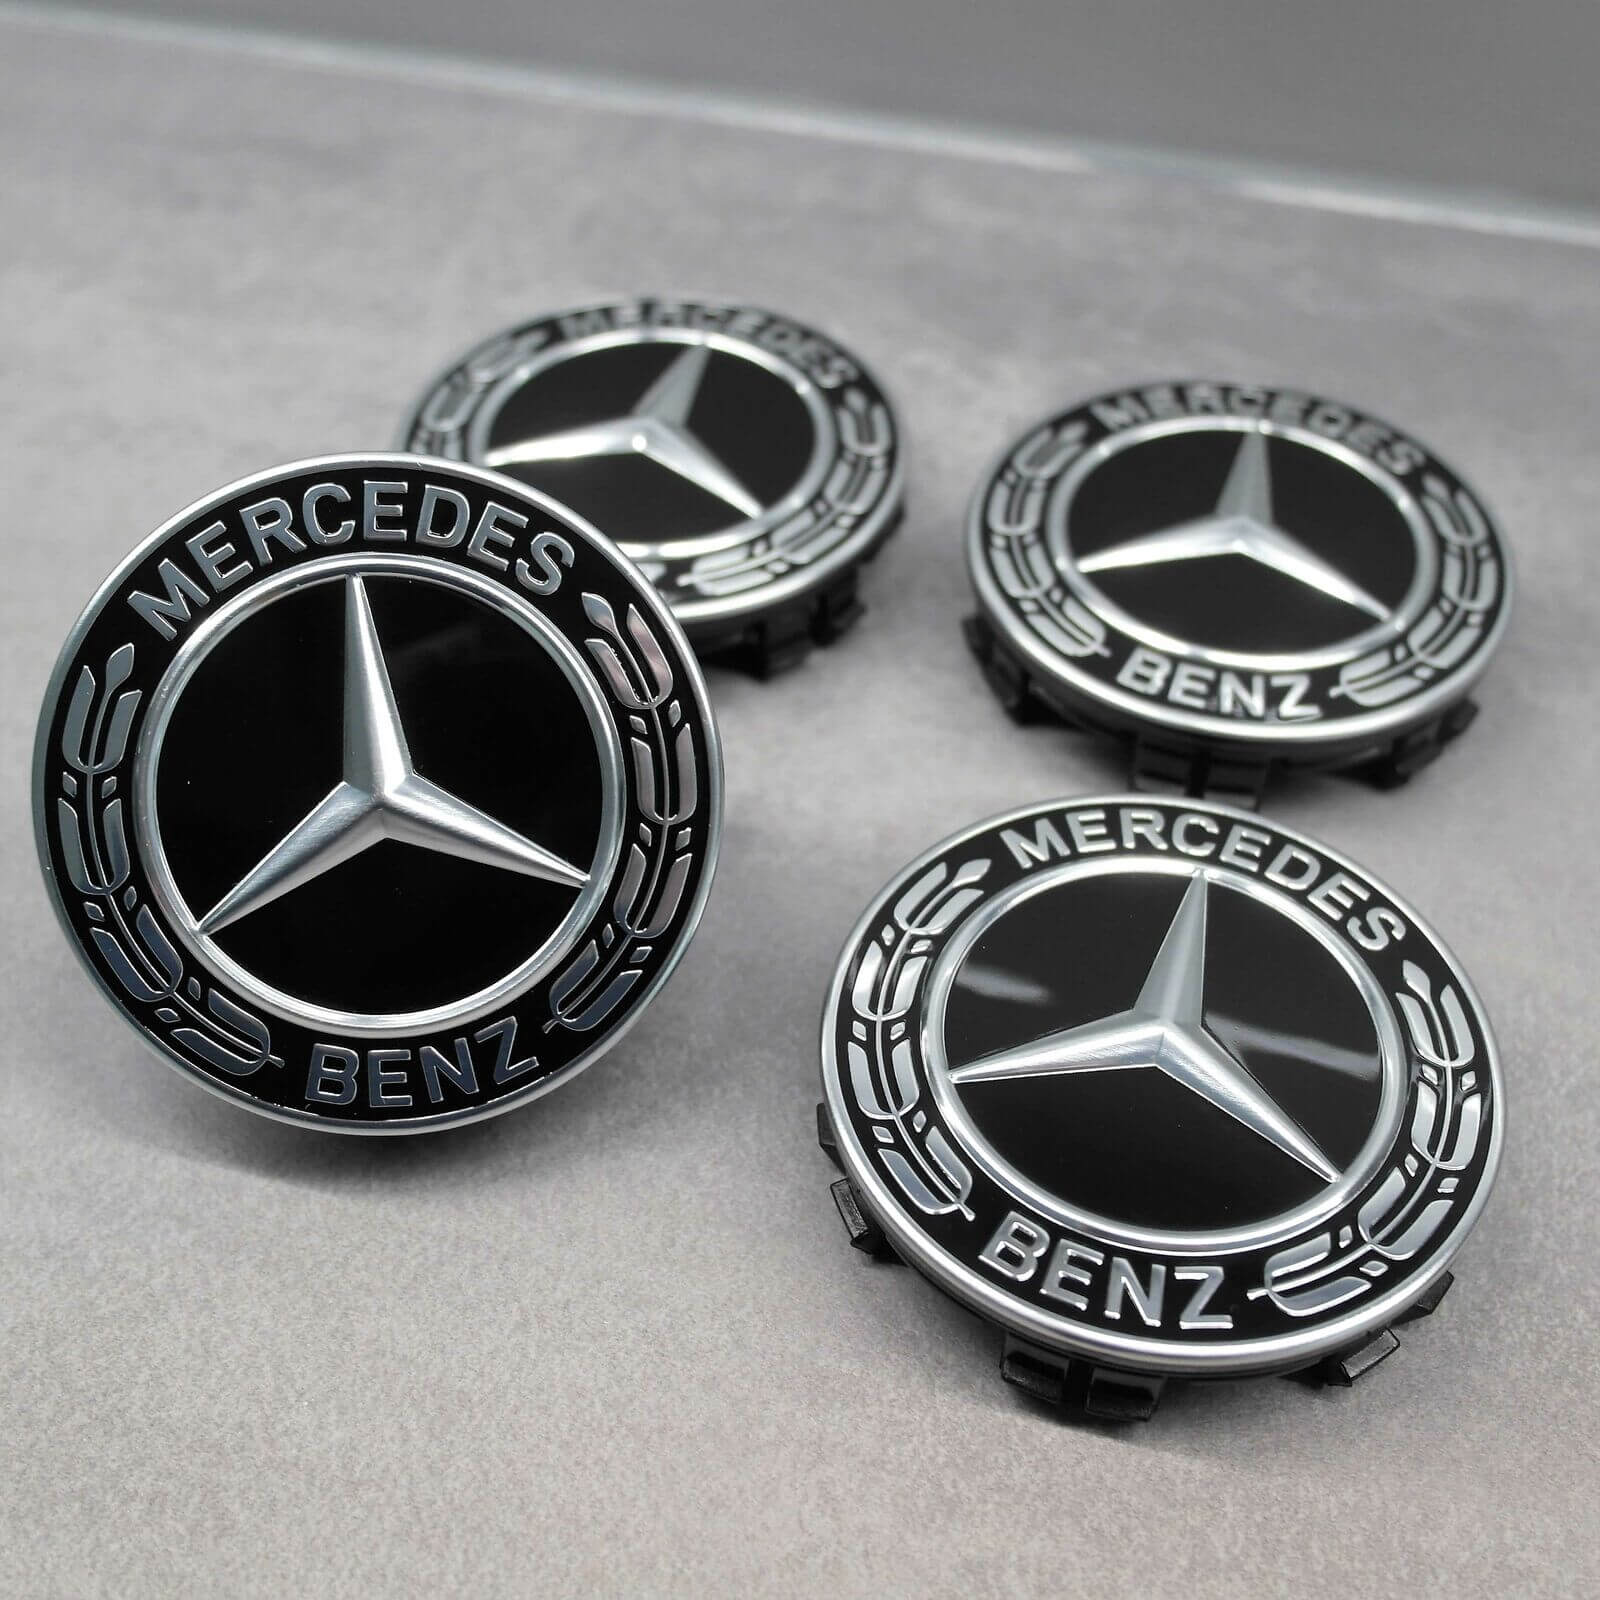 Nabendeckel Satz schwarz Lorbeerkranz Original Mercedes-Benz Durchmesser 66,8 mm